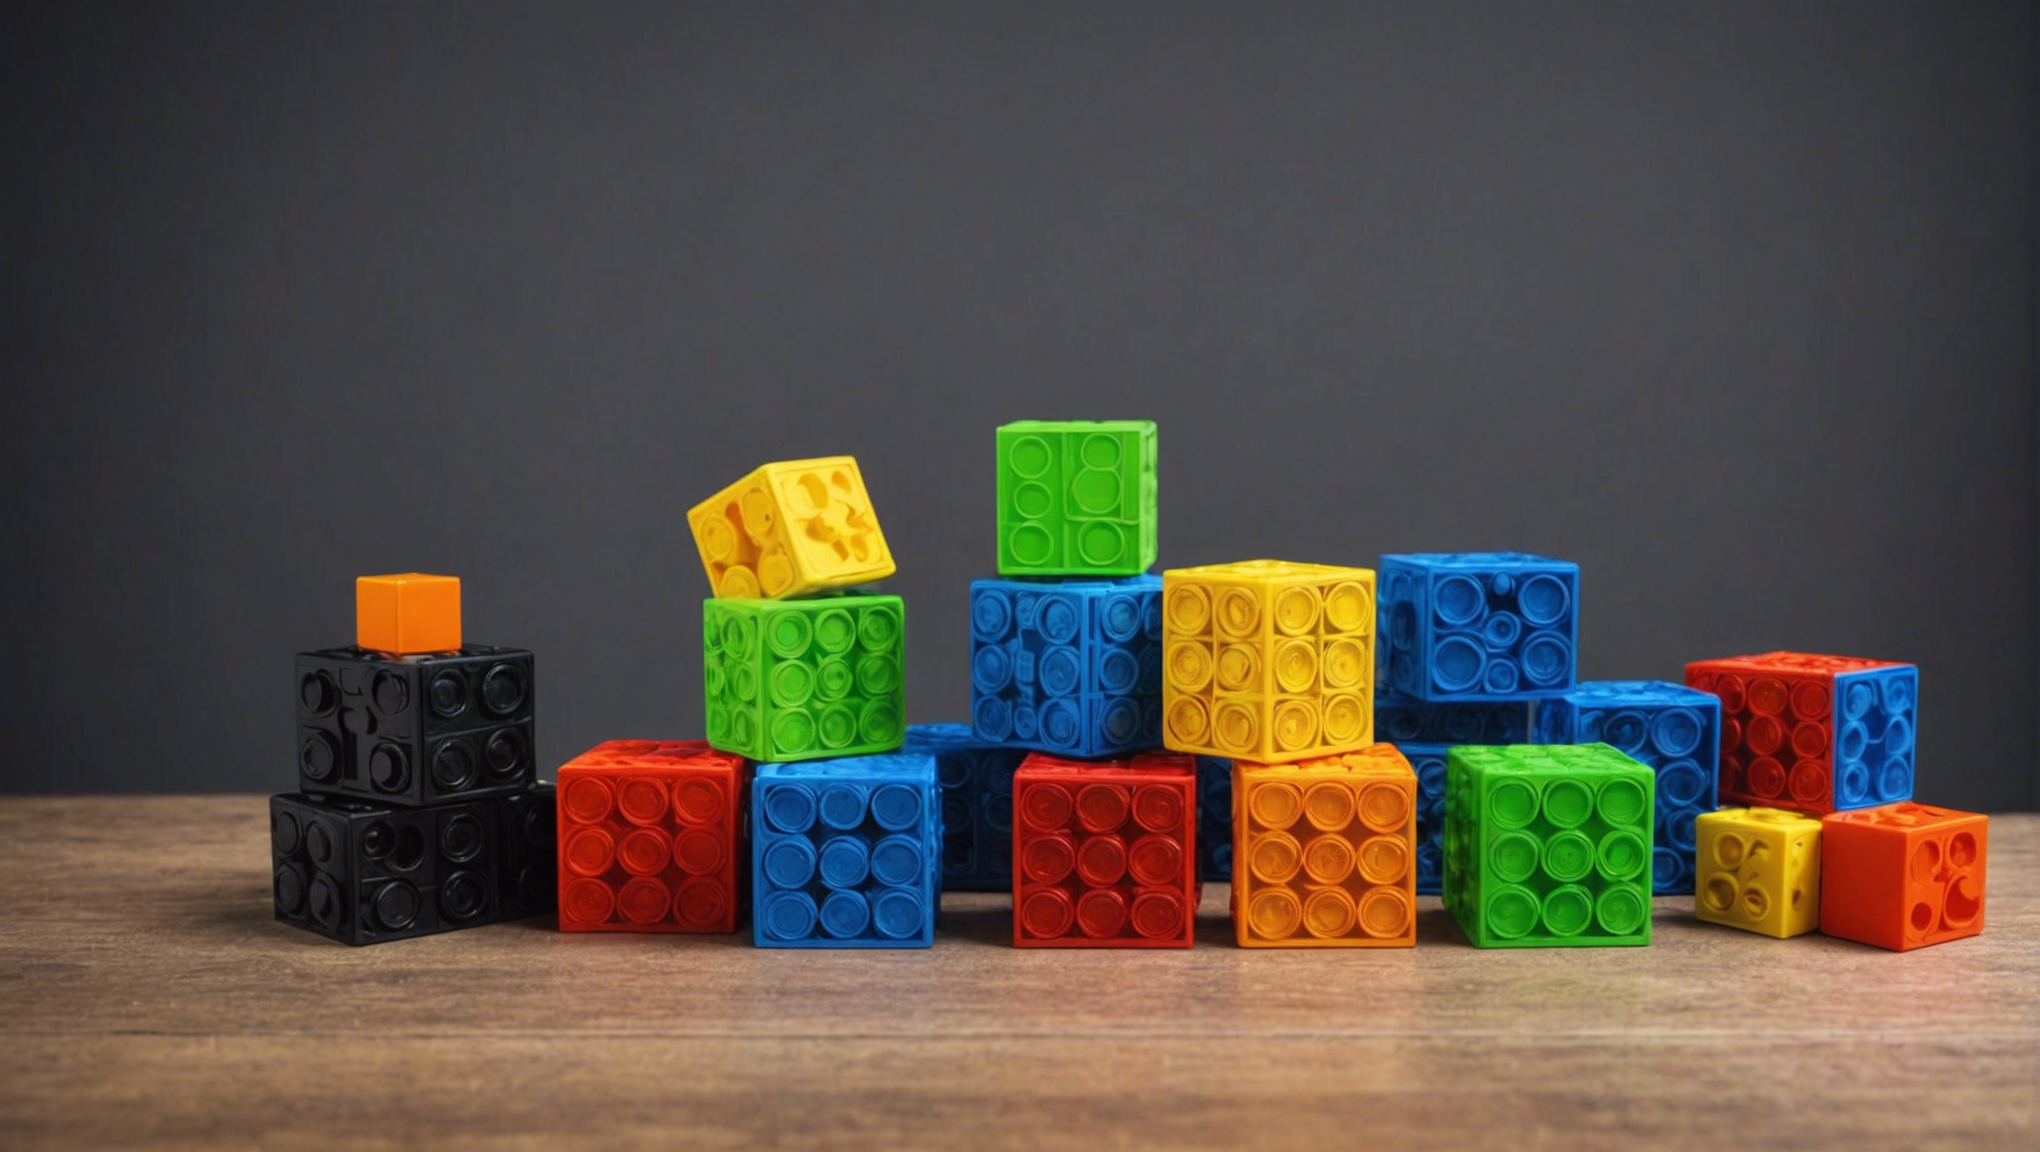 découvrez cubelets, une innovation exceptionnelle dans le domaine des jouets. des blocs modulaires qui permettent de construire et d'apprendre de manière ludique. un jeu de construction unique en son genre qui encourage la créativité et l'apprentissage.